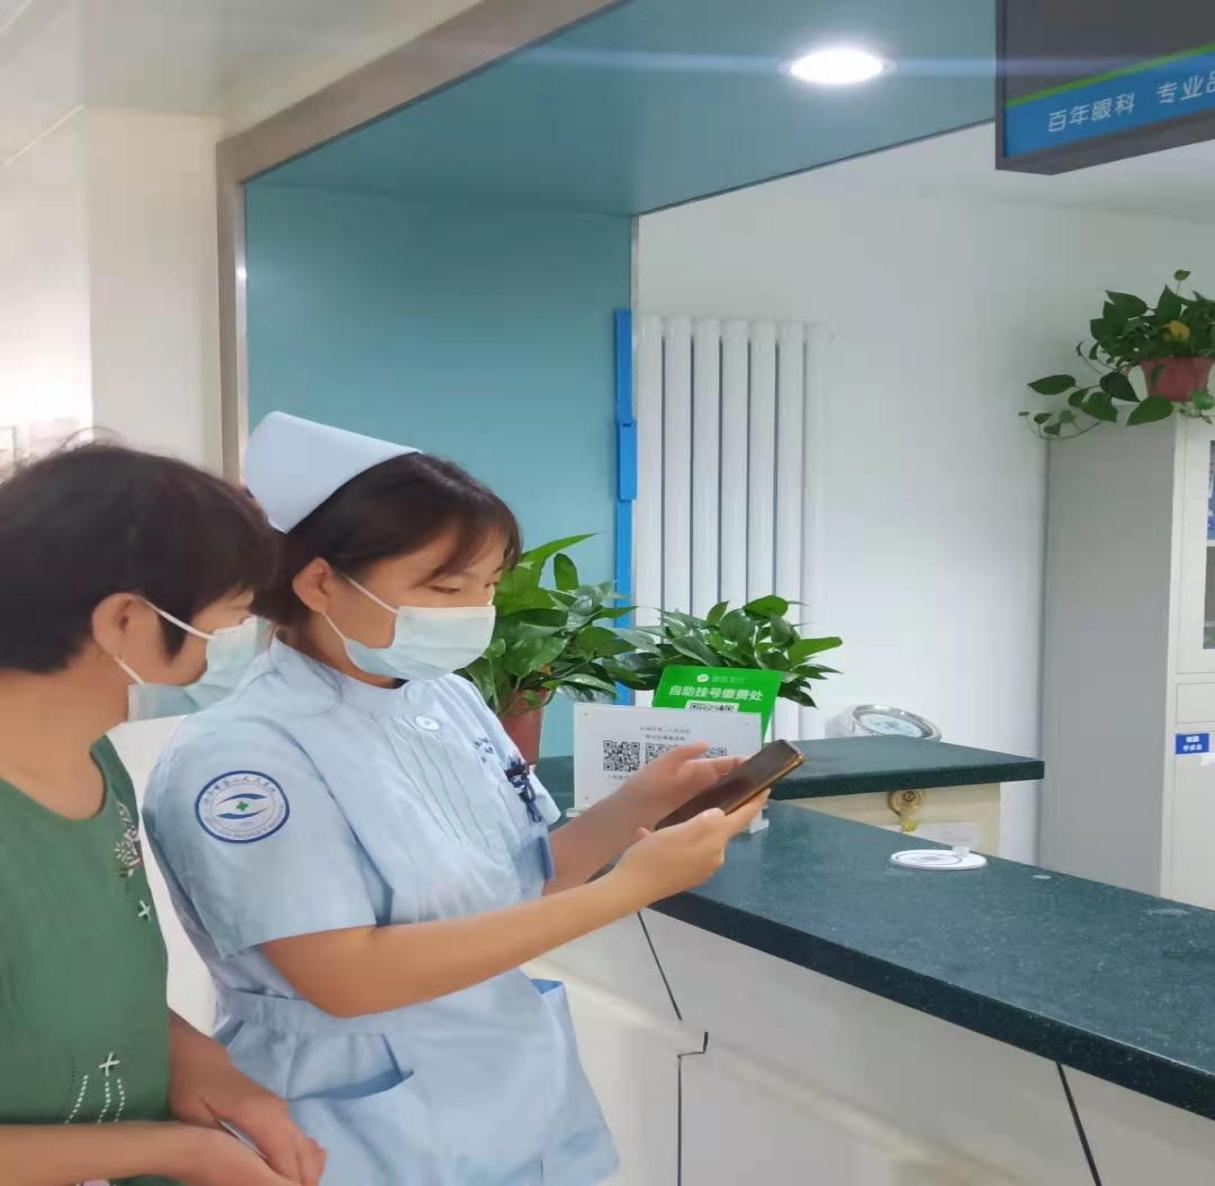 济南市第二人民医院「EYE 健康促进在行动」暨「护佑光明」健康教育项目系列报道四